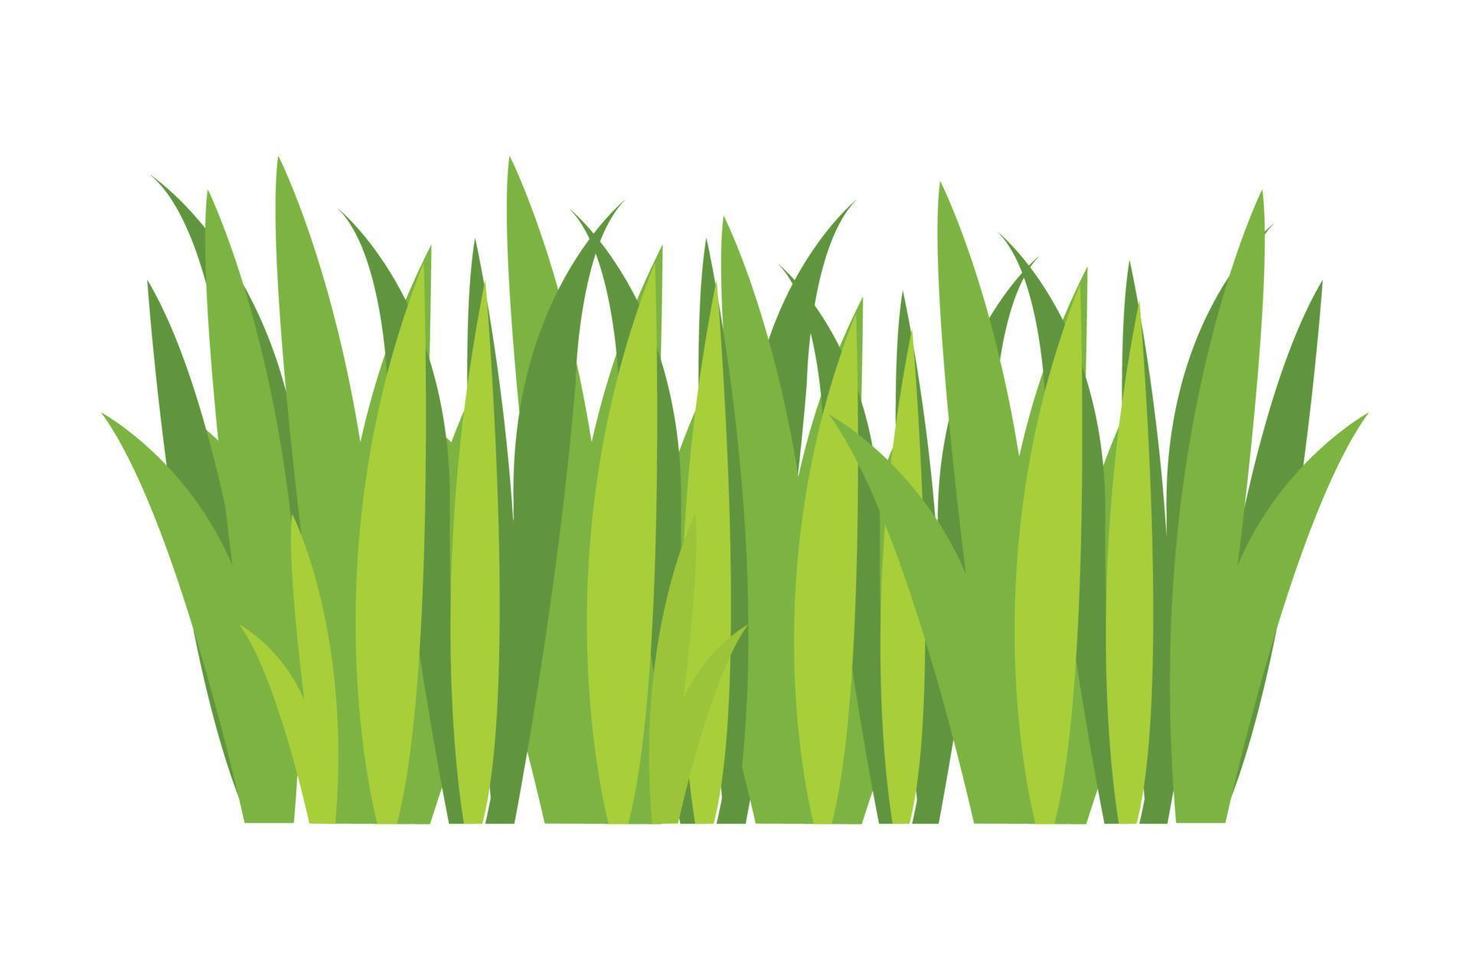 groen gras illustratie. groen gazon, bloem, natuurlijk grenzen, kruiden. vlak vector illustraties voor lente, zomer, natuur, grond, planten concept.